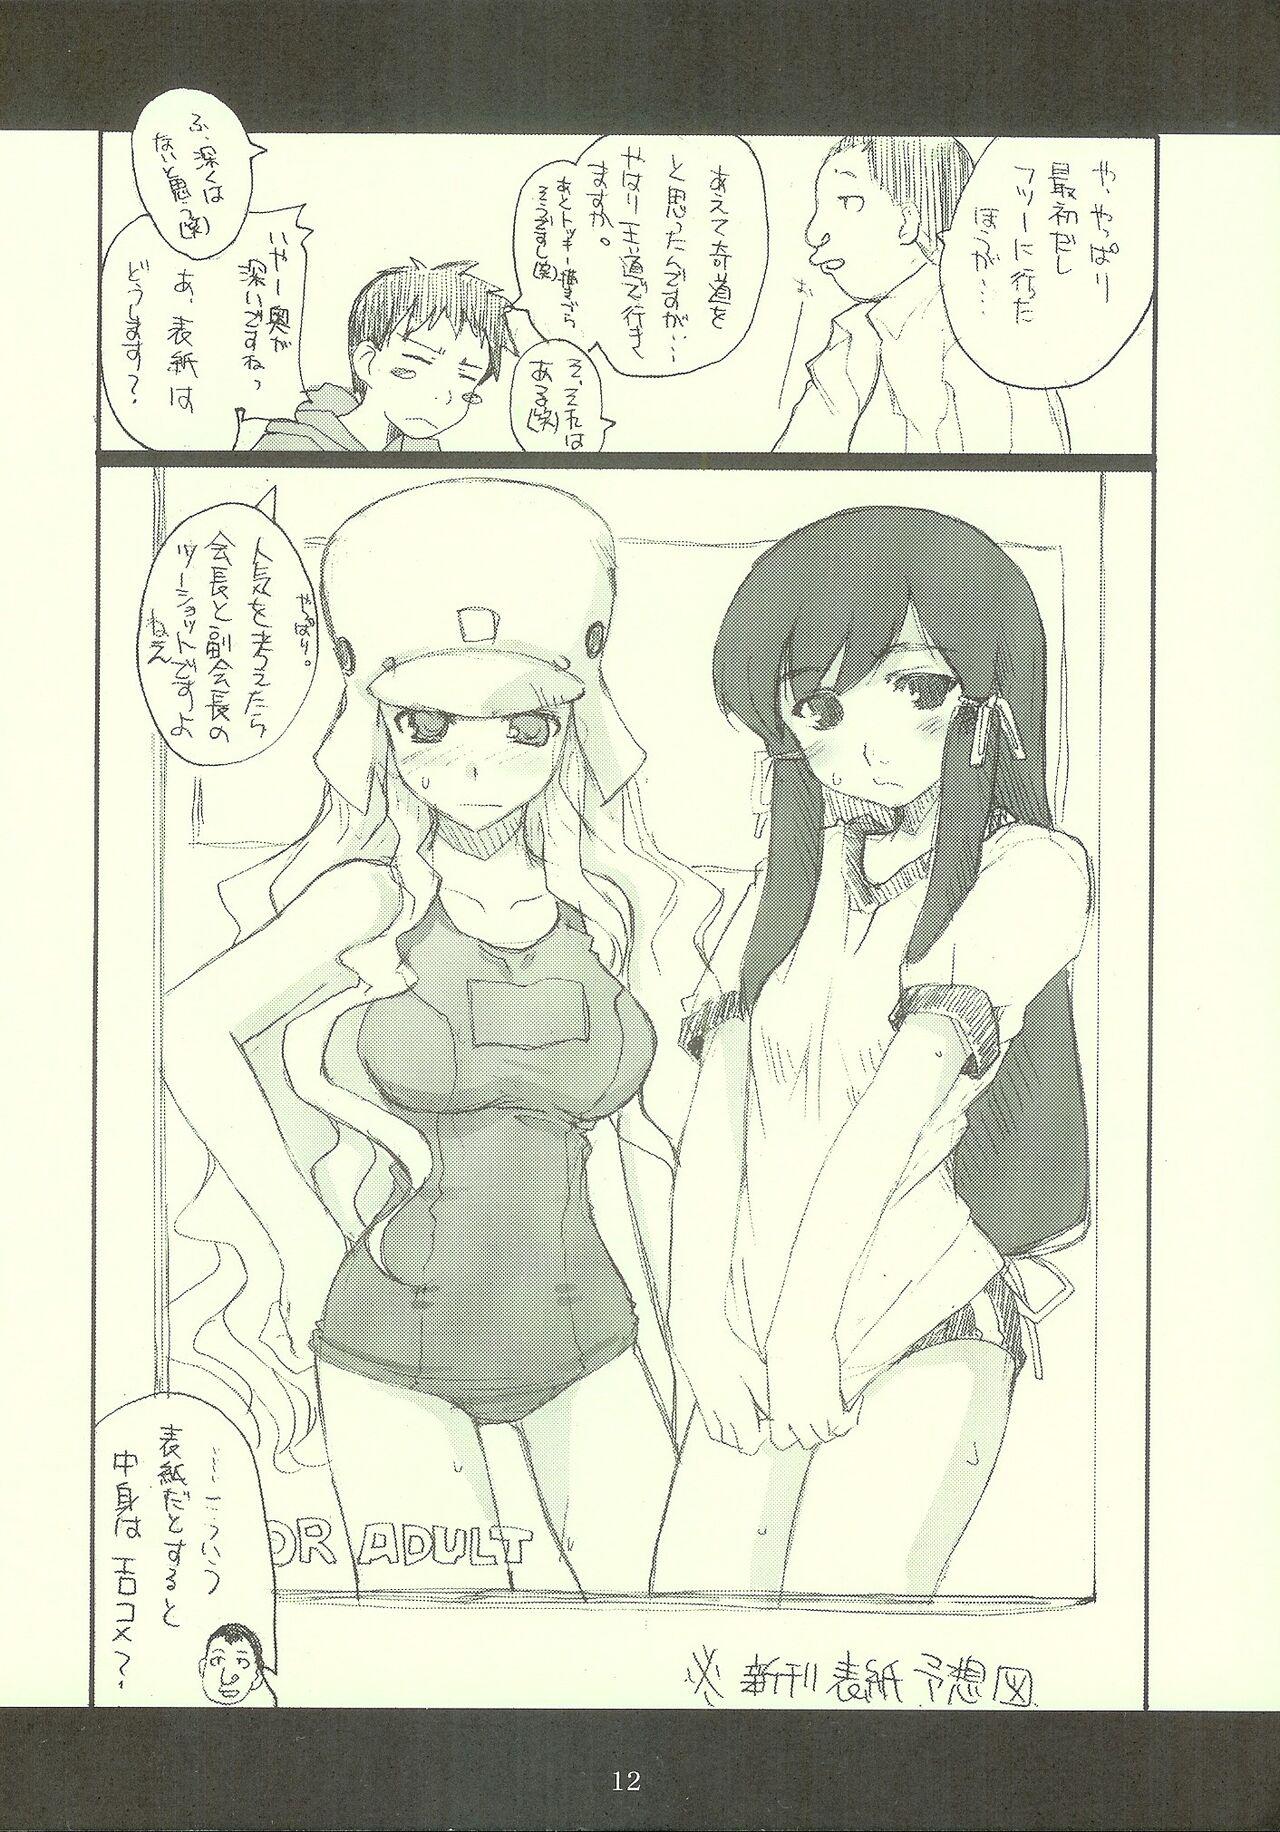 Chicks ロンメル戦車隊シリーズ 「…フタキョンってなに?」号!!。 - Genshiken Kujibiki unbalance Pauzudo - Page 11